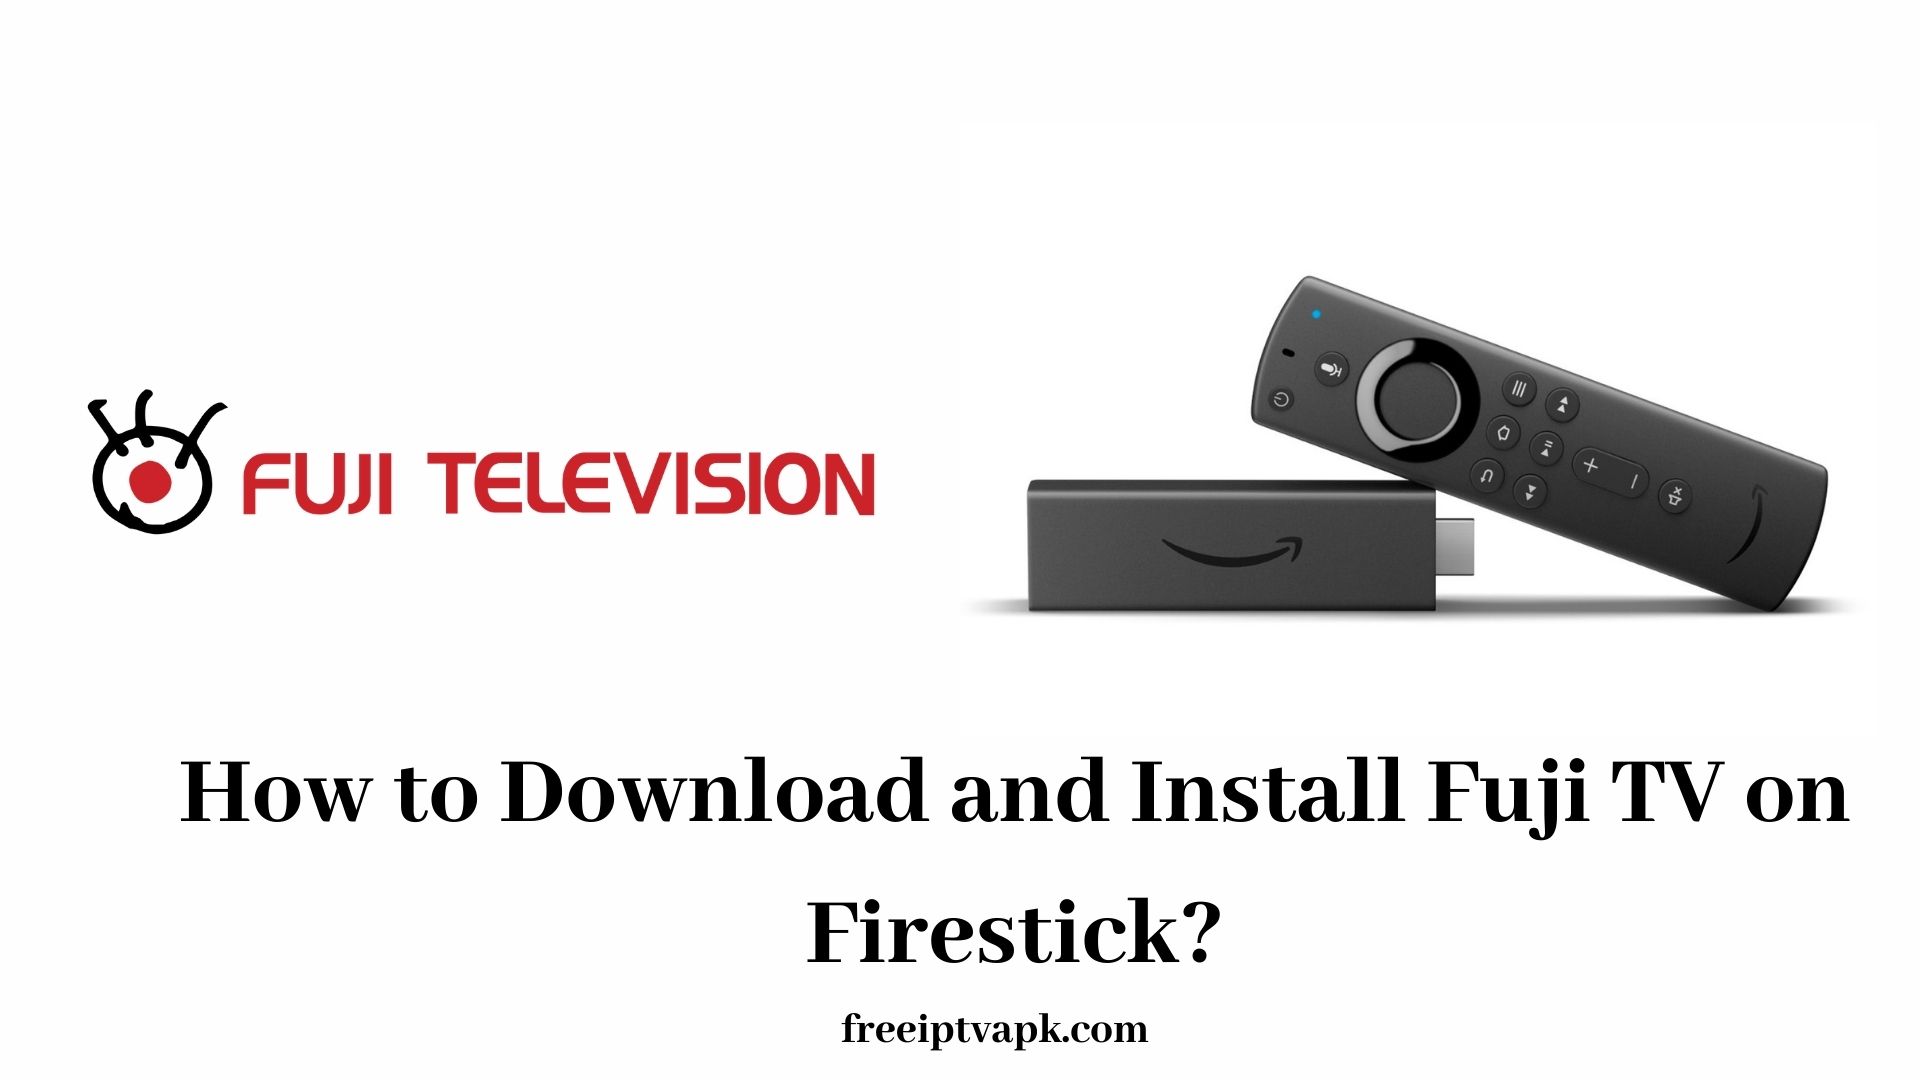 Fuji TV on Firestick